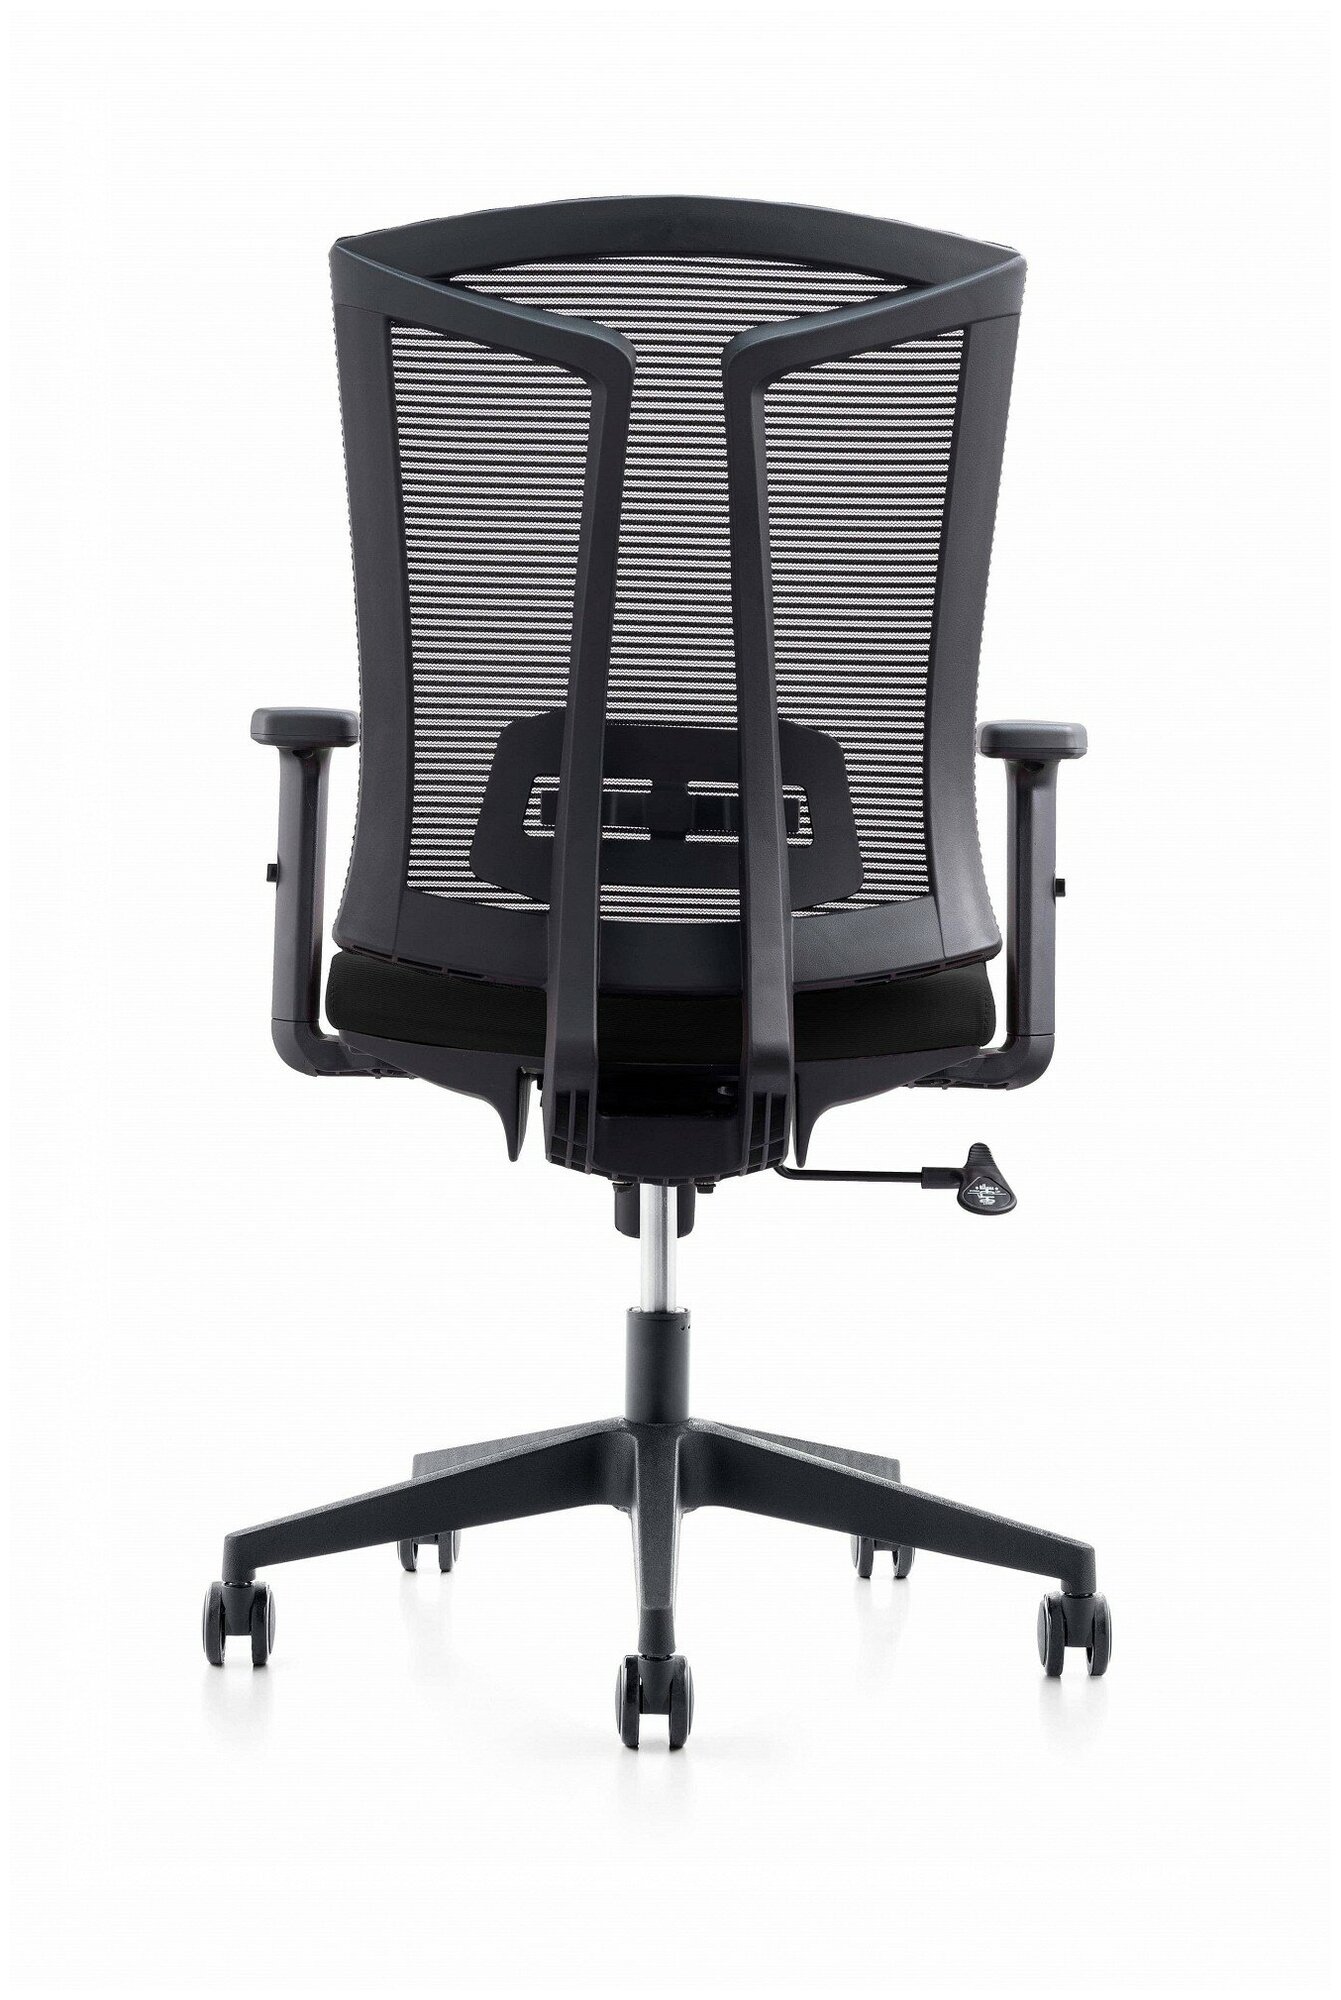 Компьютерное кресло College CLG-425 MBN-B офисное, обивка: текстиль, цвет: черный - фотография № 3